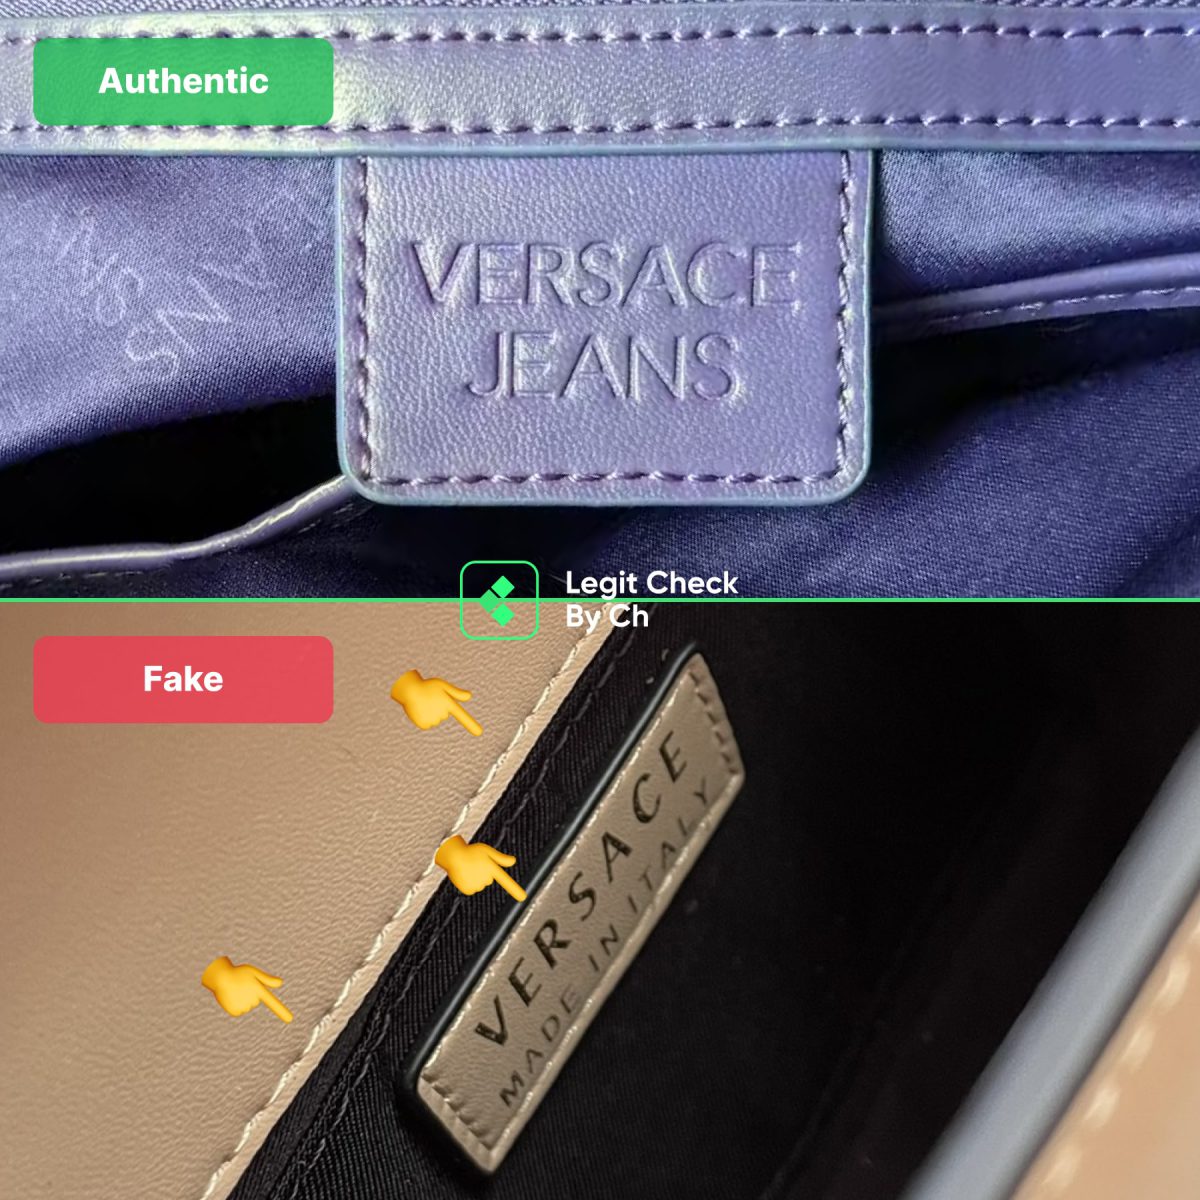 Подделка сумки Versace против настоящей этикетки